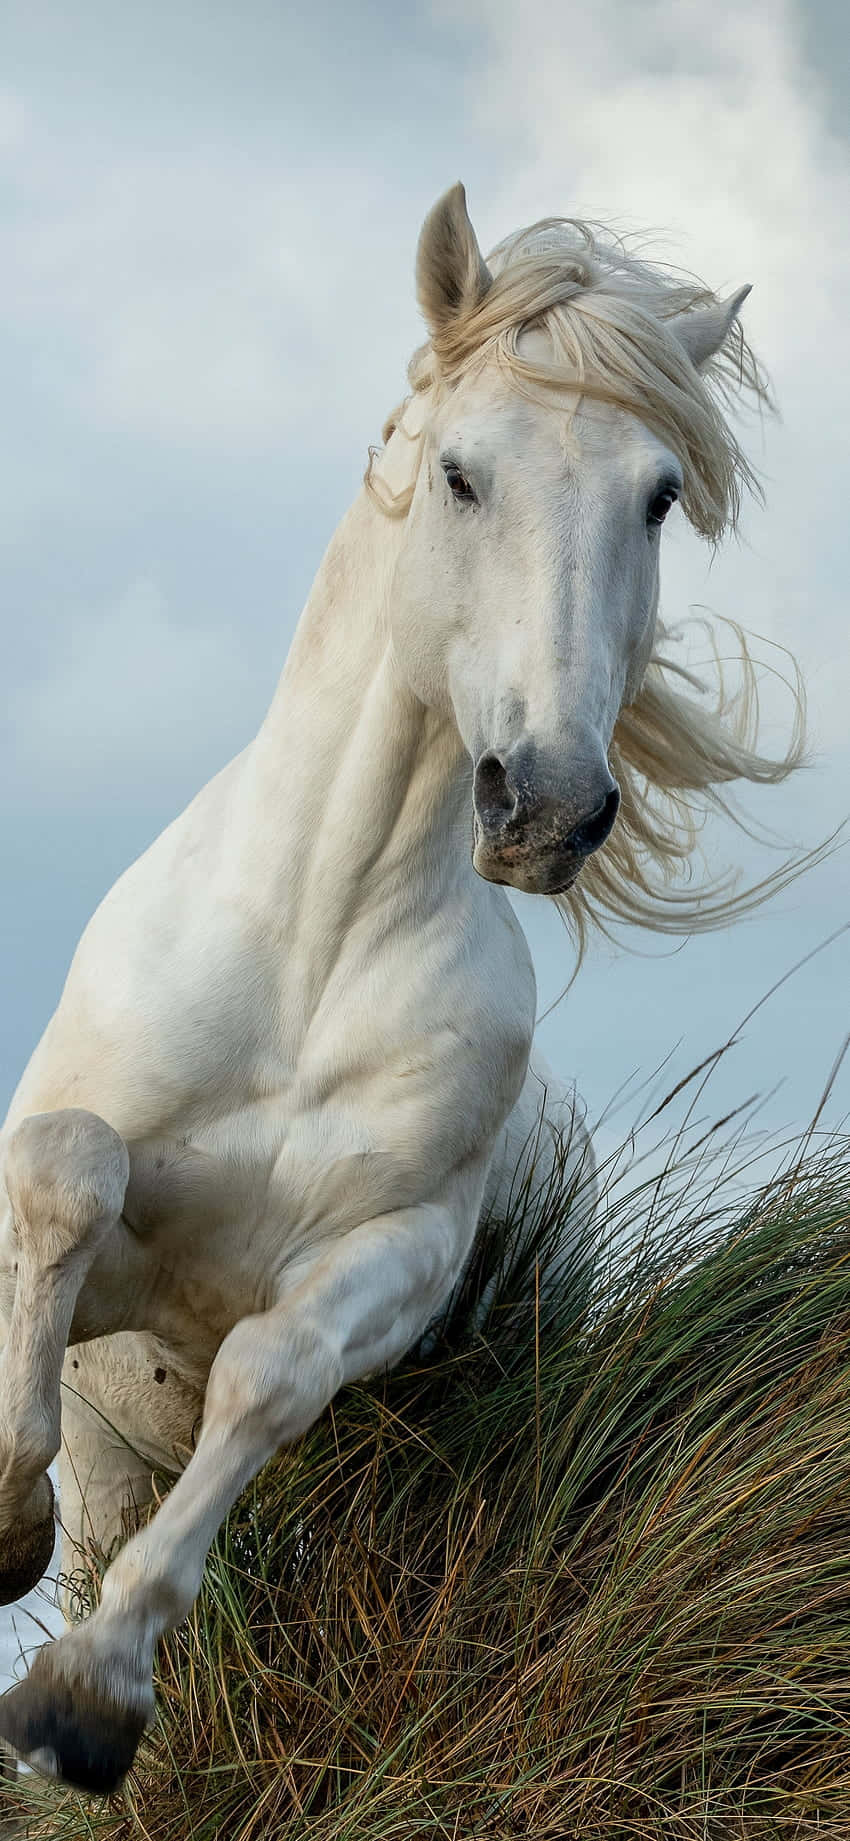 Få hestekræfter og skønhed med den smukke hest Iphone wallpaper. Wallpaper